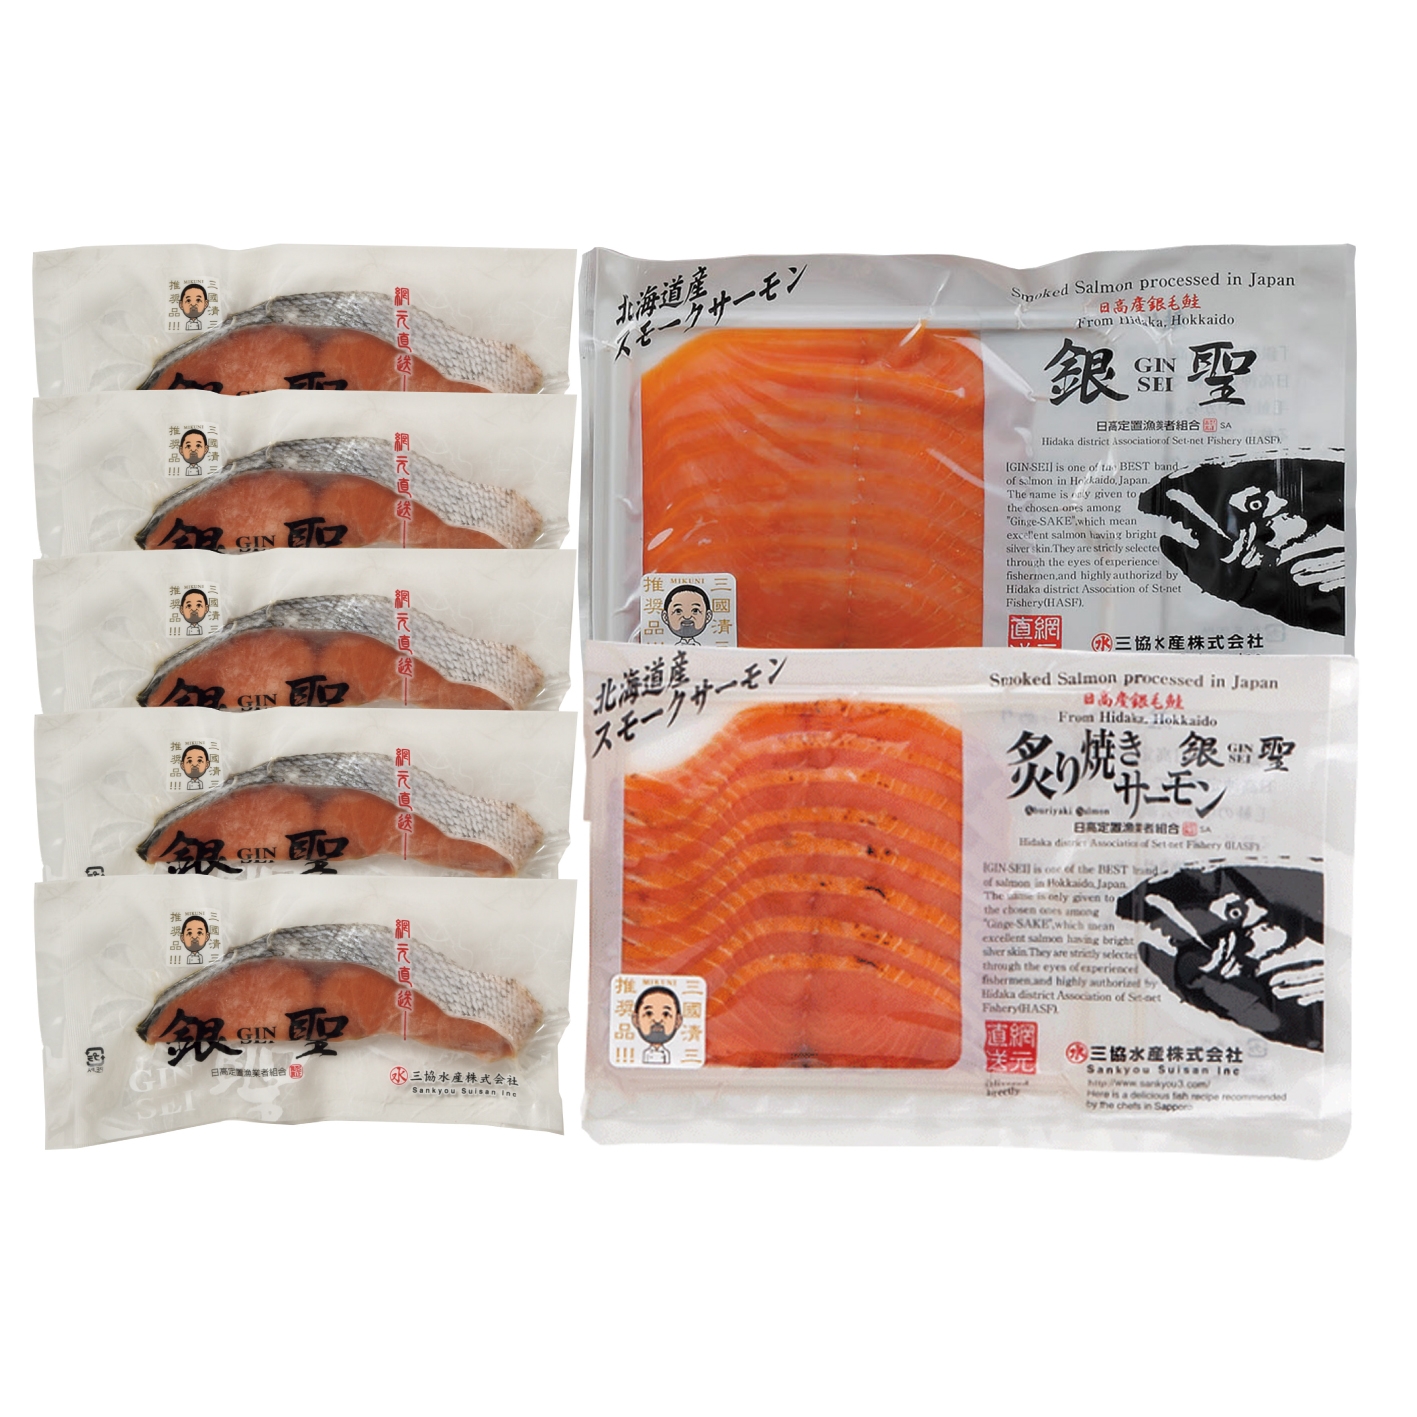 三國推奨 漁吉丸の銀聖切身 スモークサーモン炙り焼きセット Gift Pad